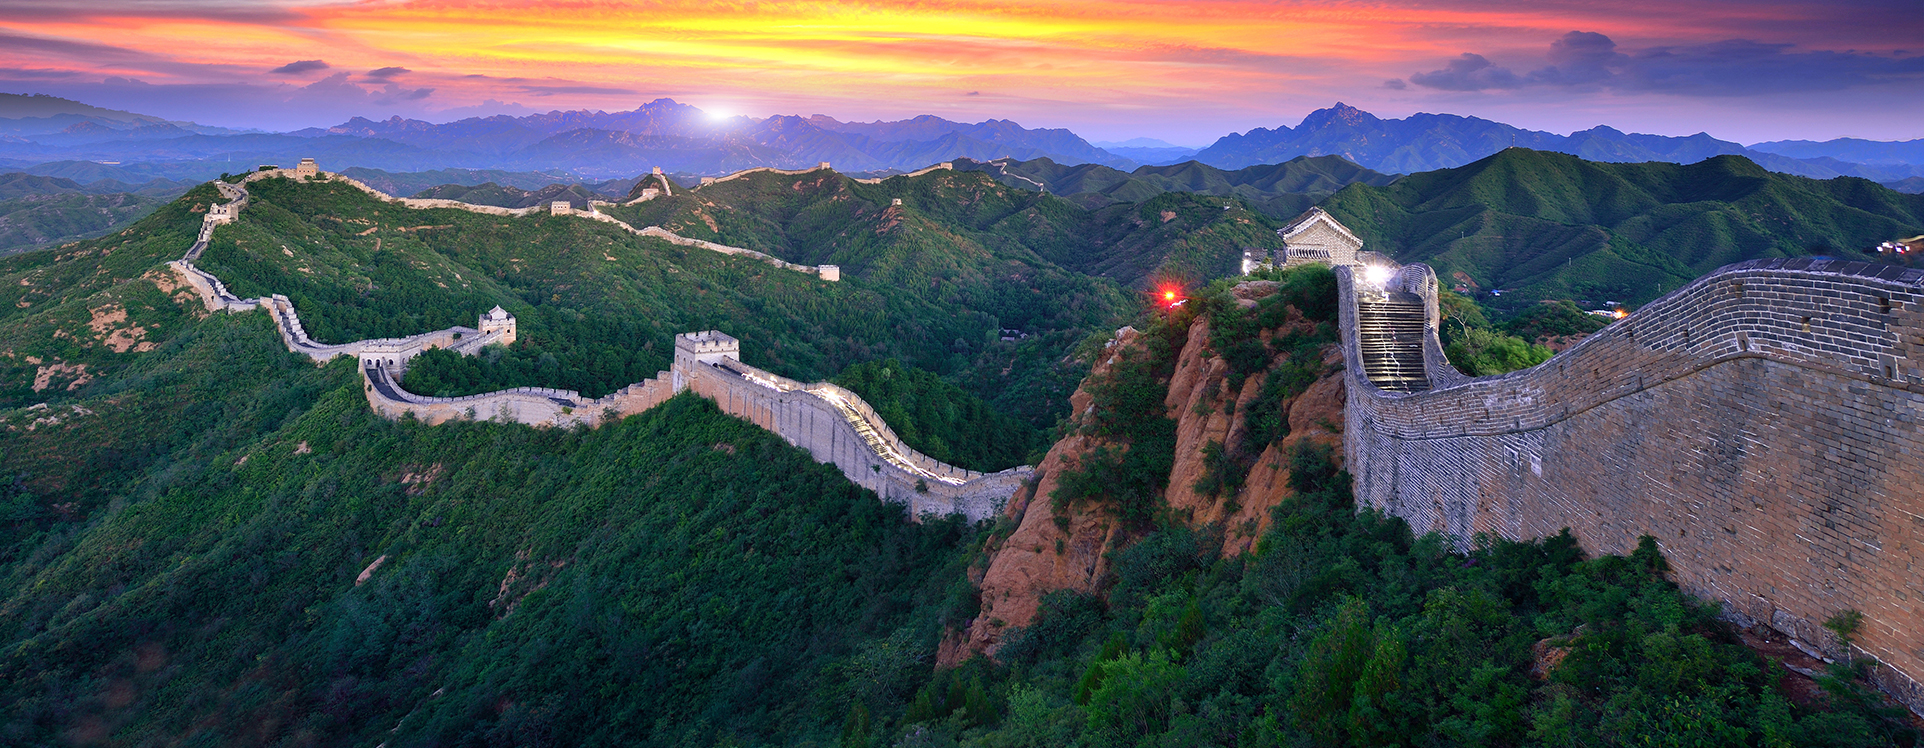 Cuantos kilometros tiene la muralla china